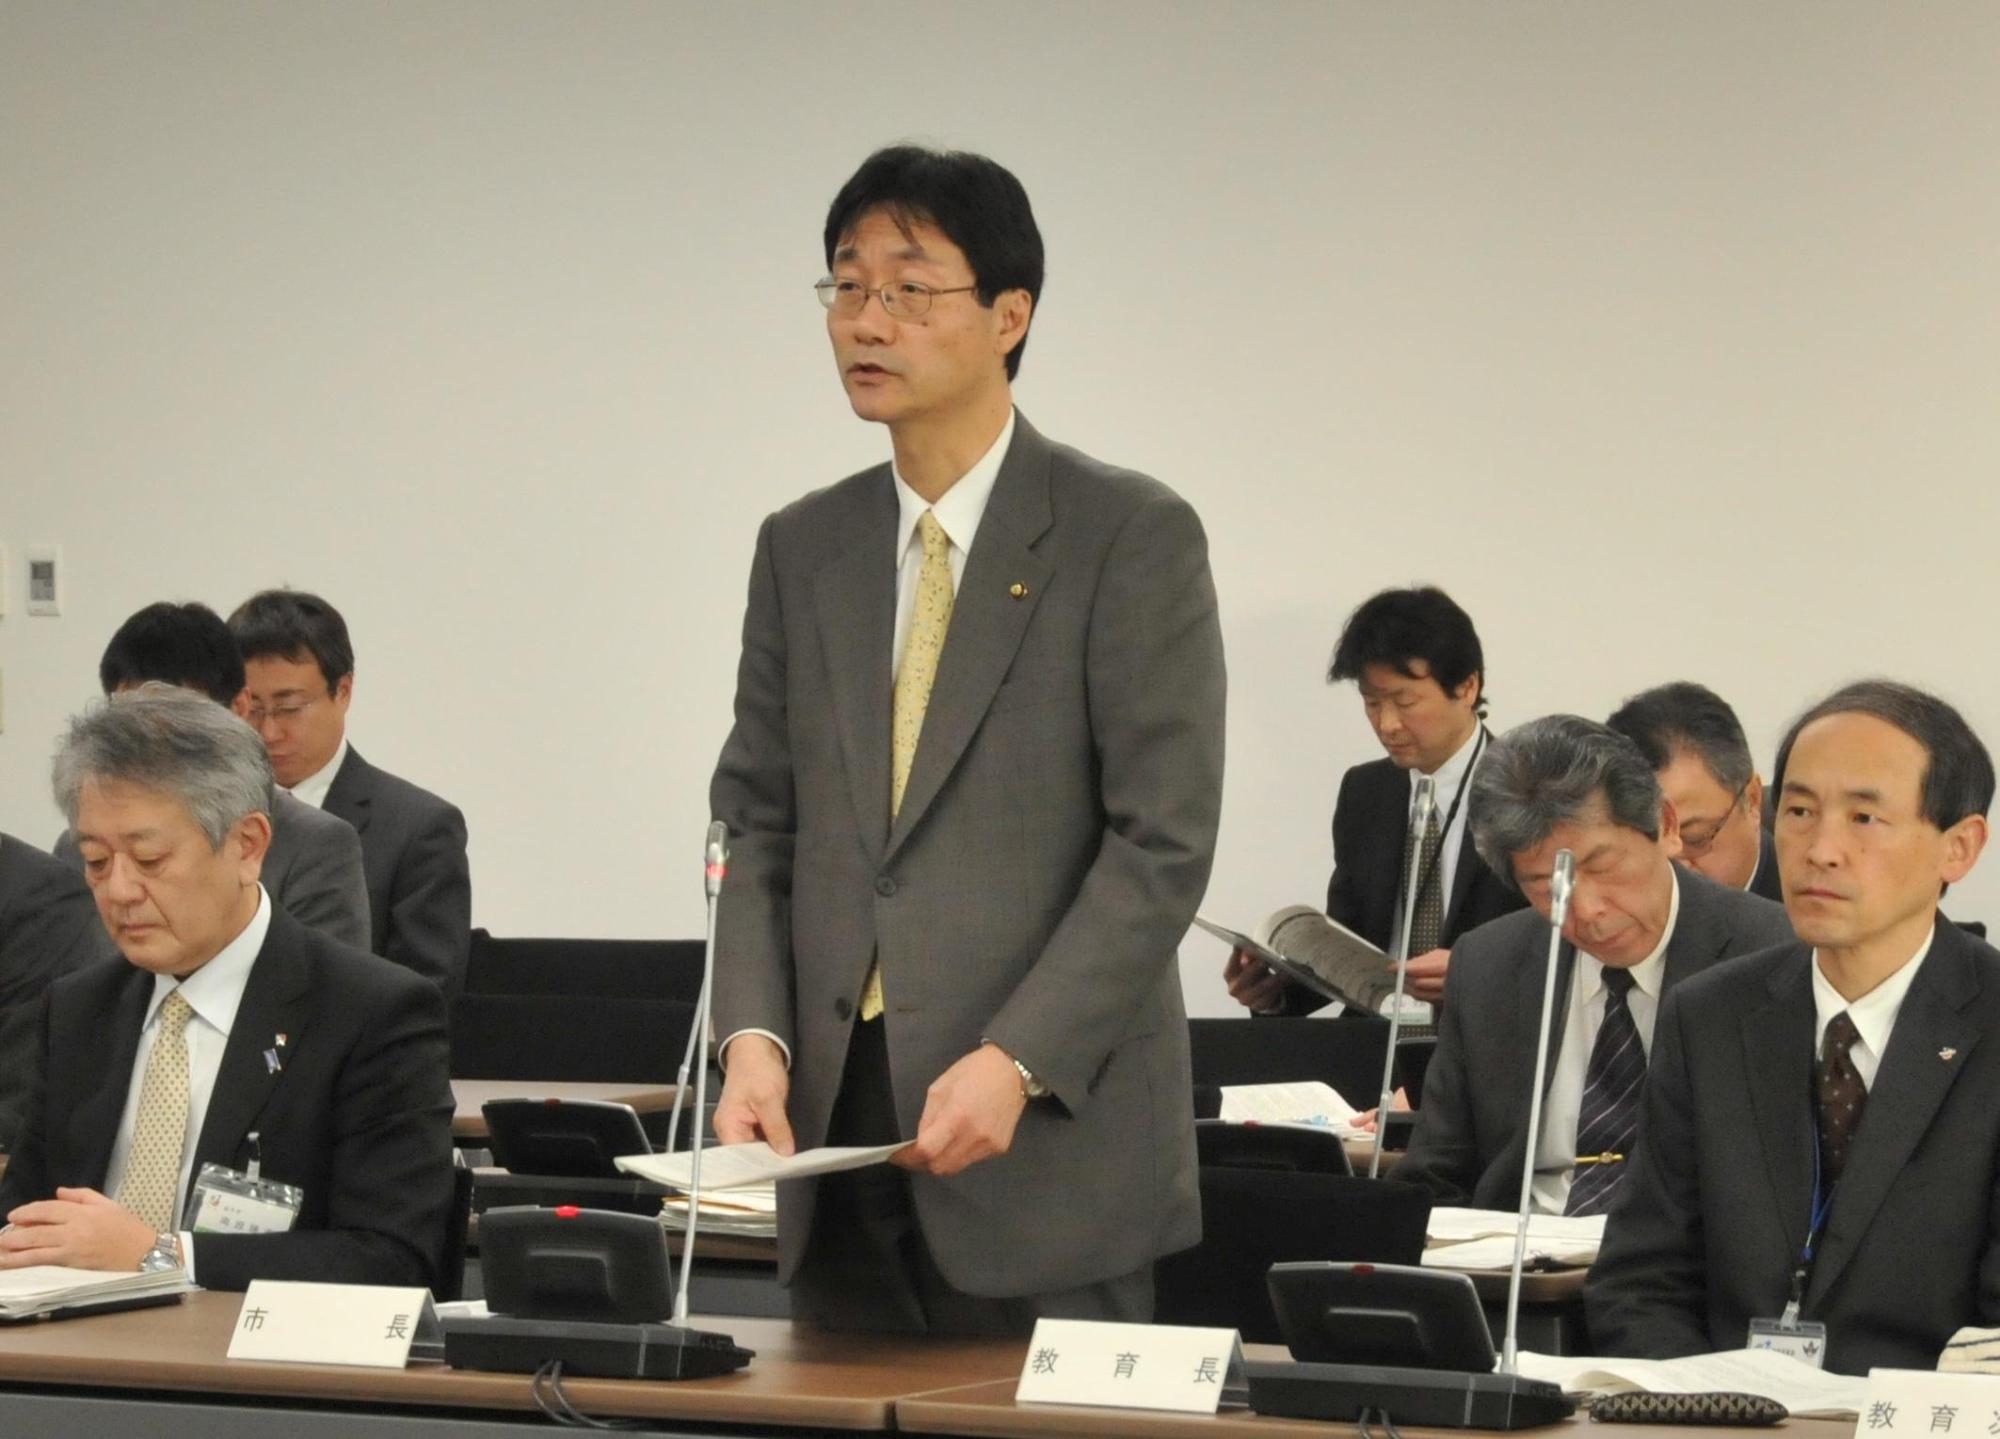 スーツ姿で起立し話をする鈴木市長の写真